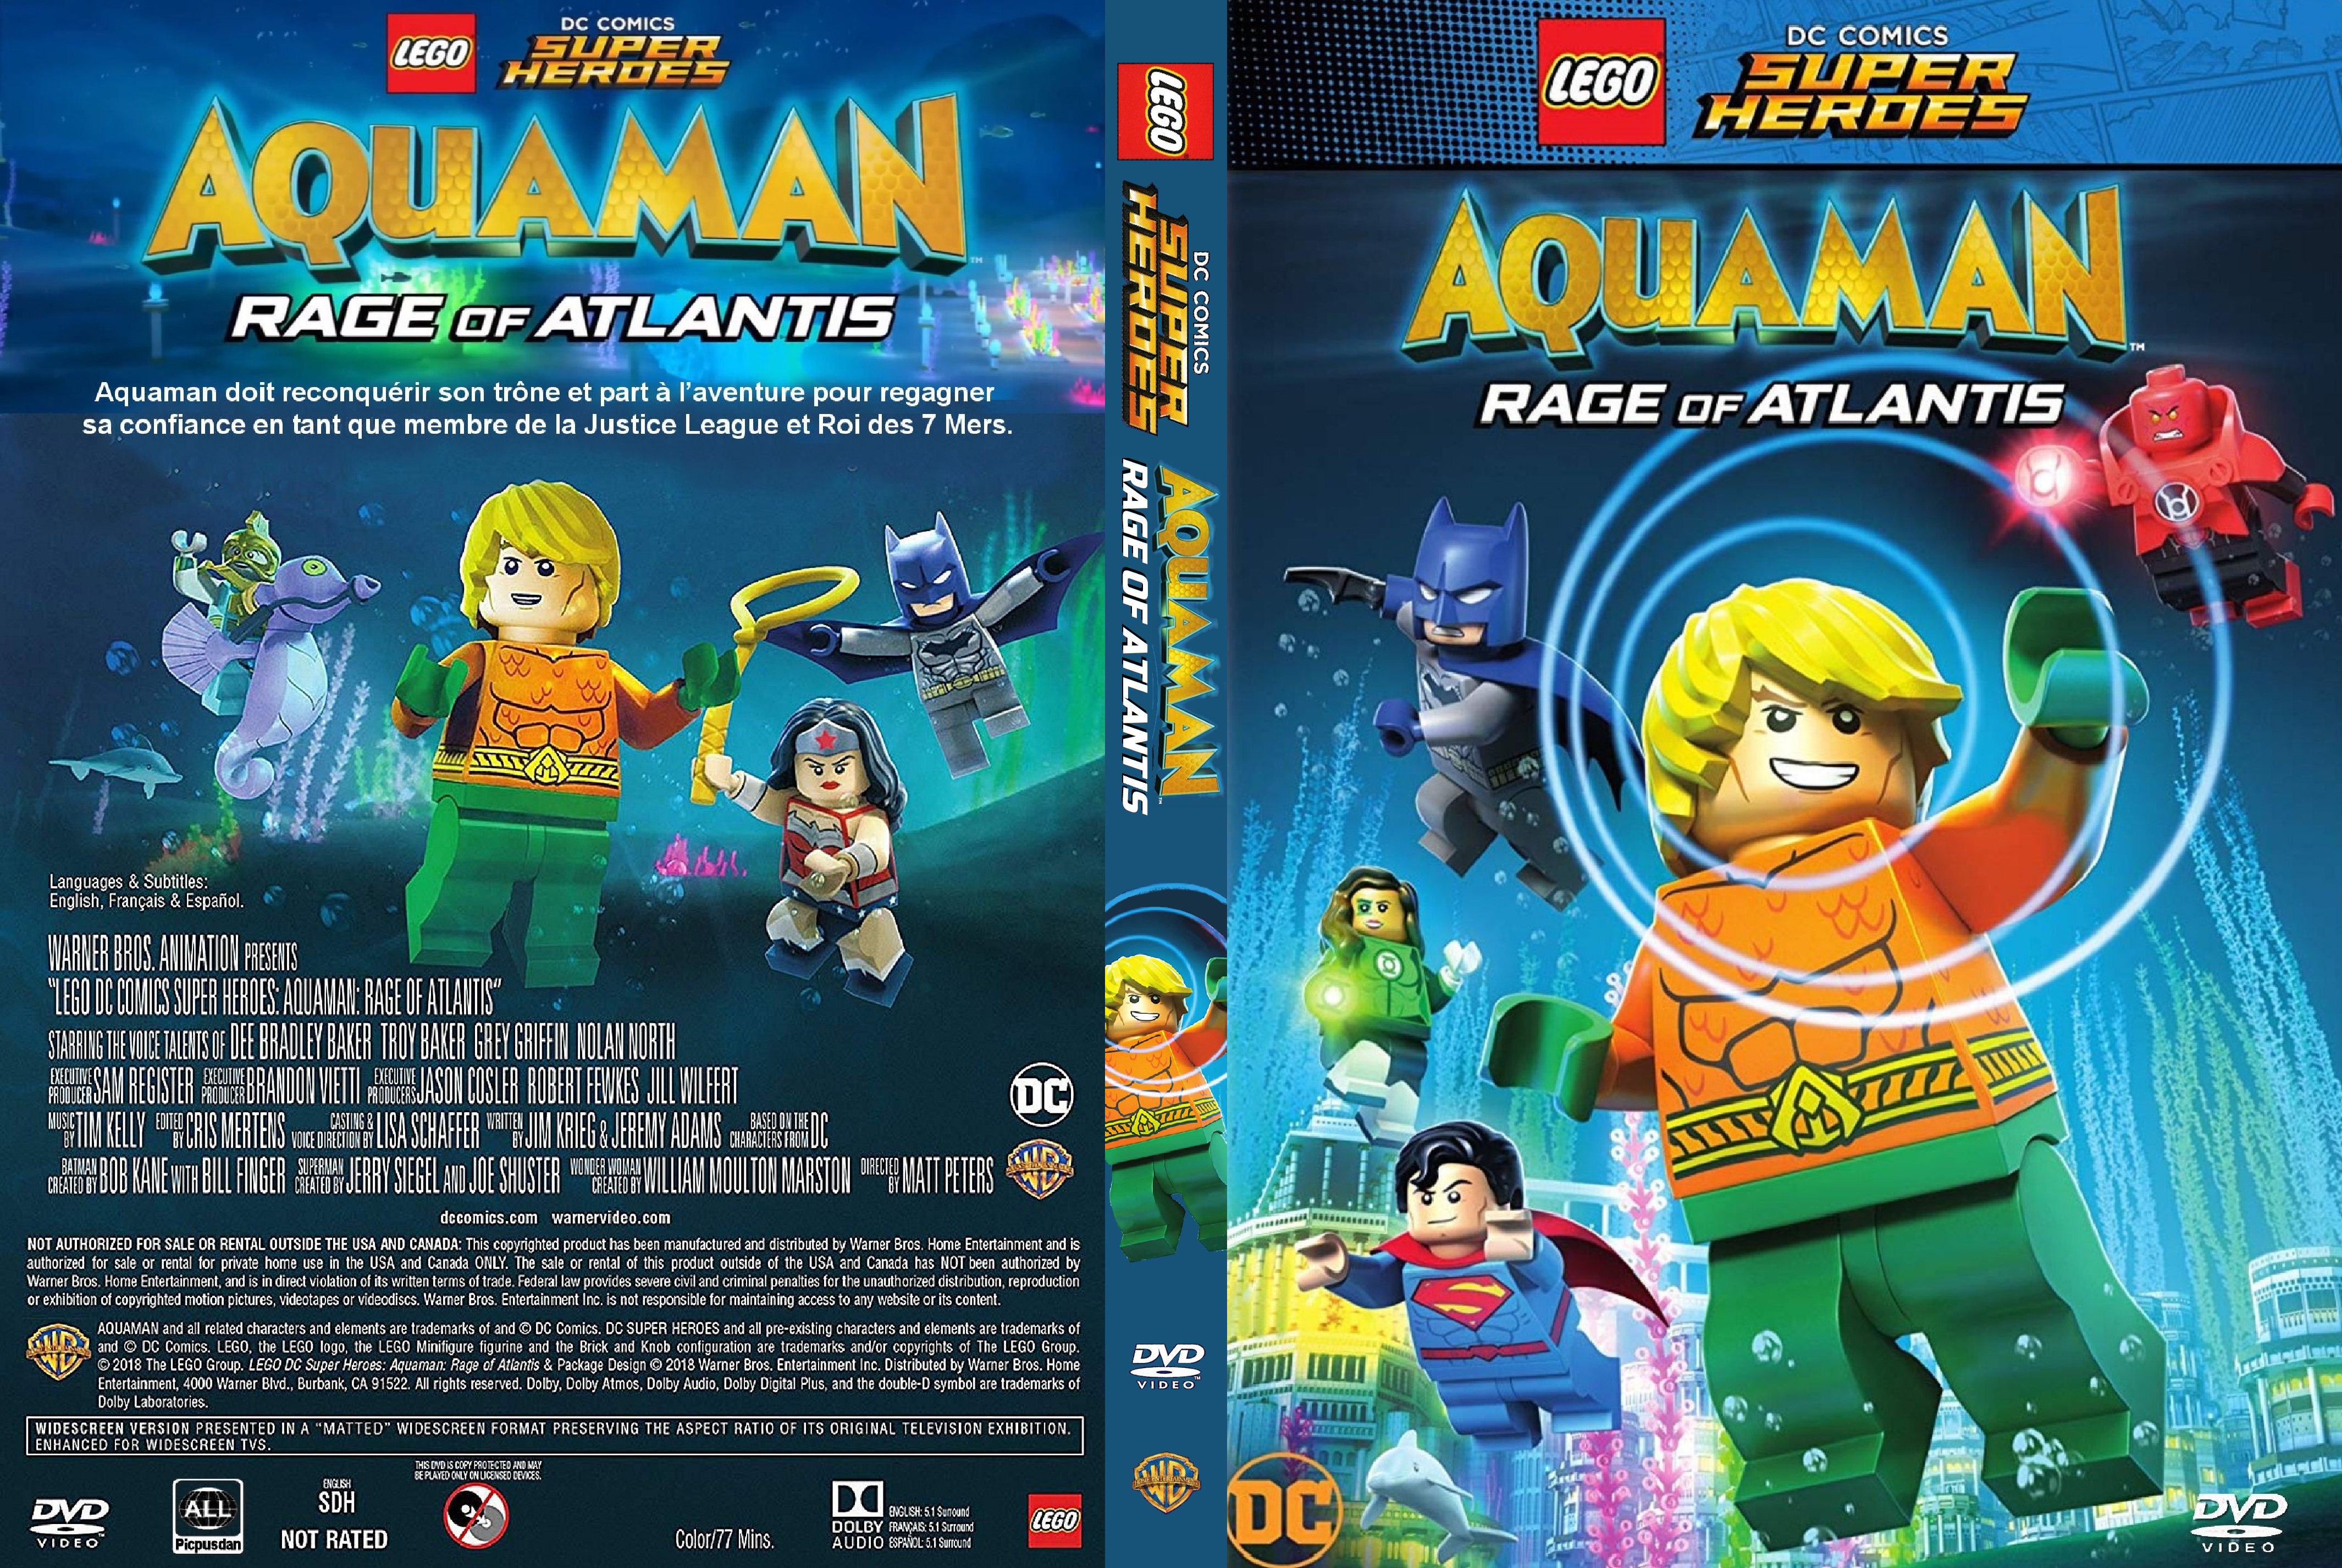 Jaquette DVD LEGO DC Comics Super Heroes Aquaman Rage of Atlantis custom